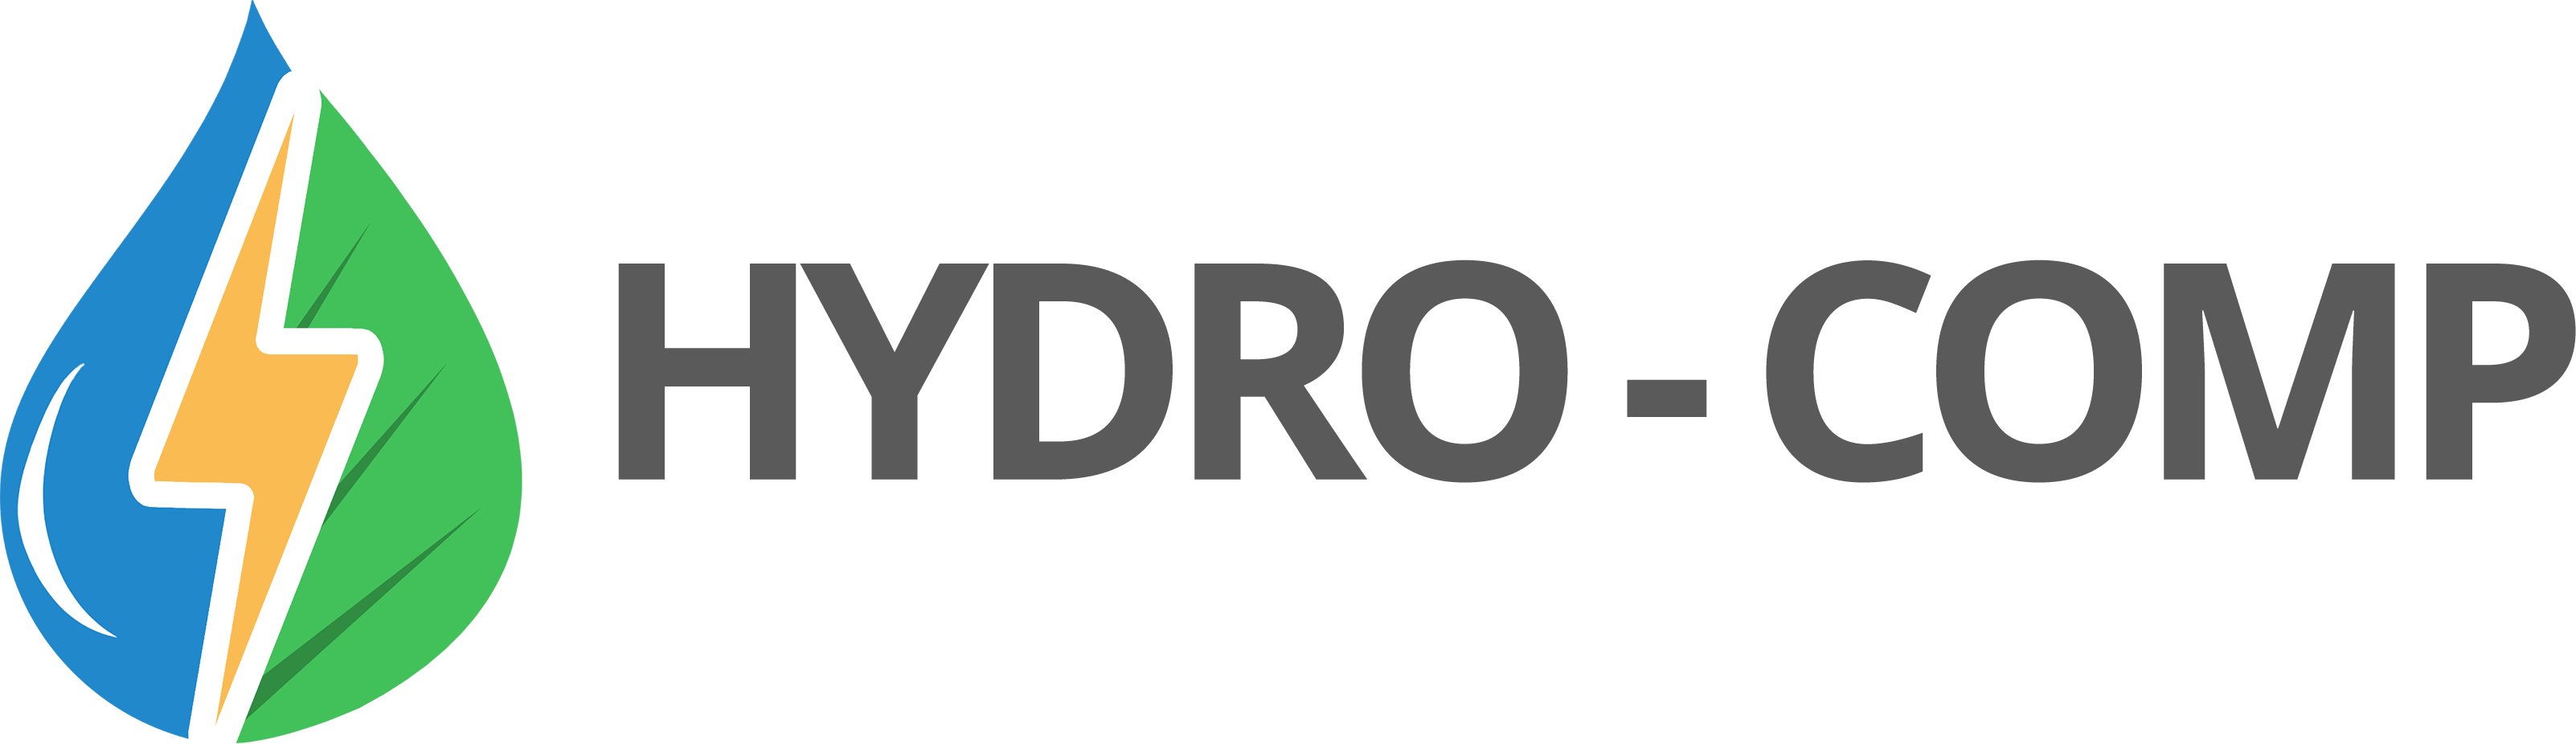 Hydro-Comp Enterprises